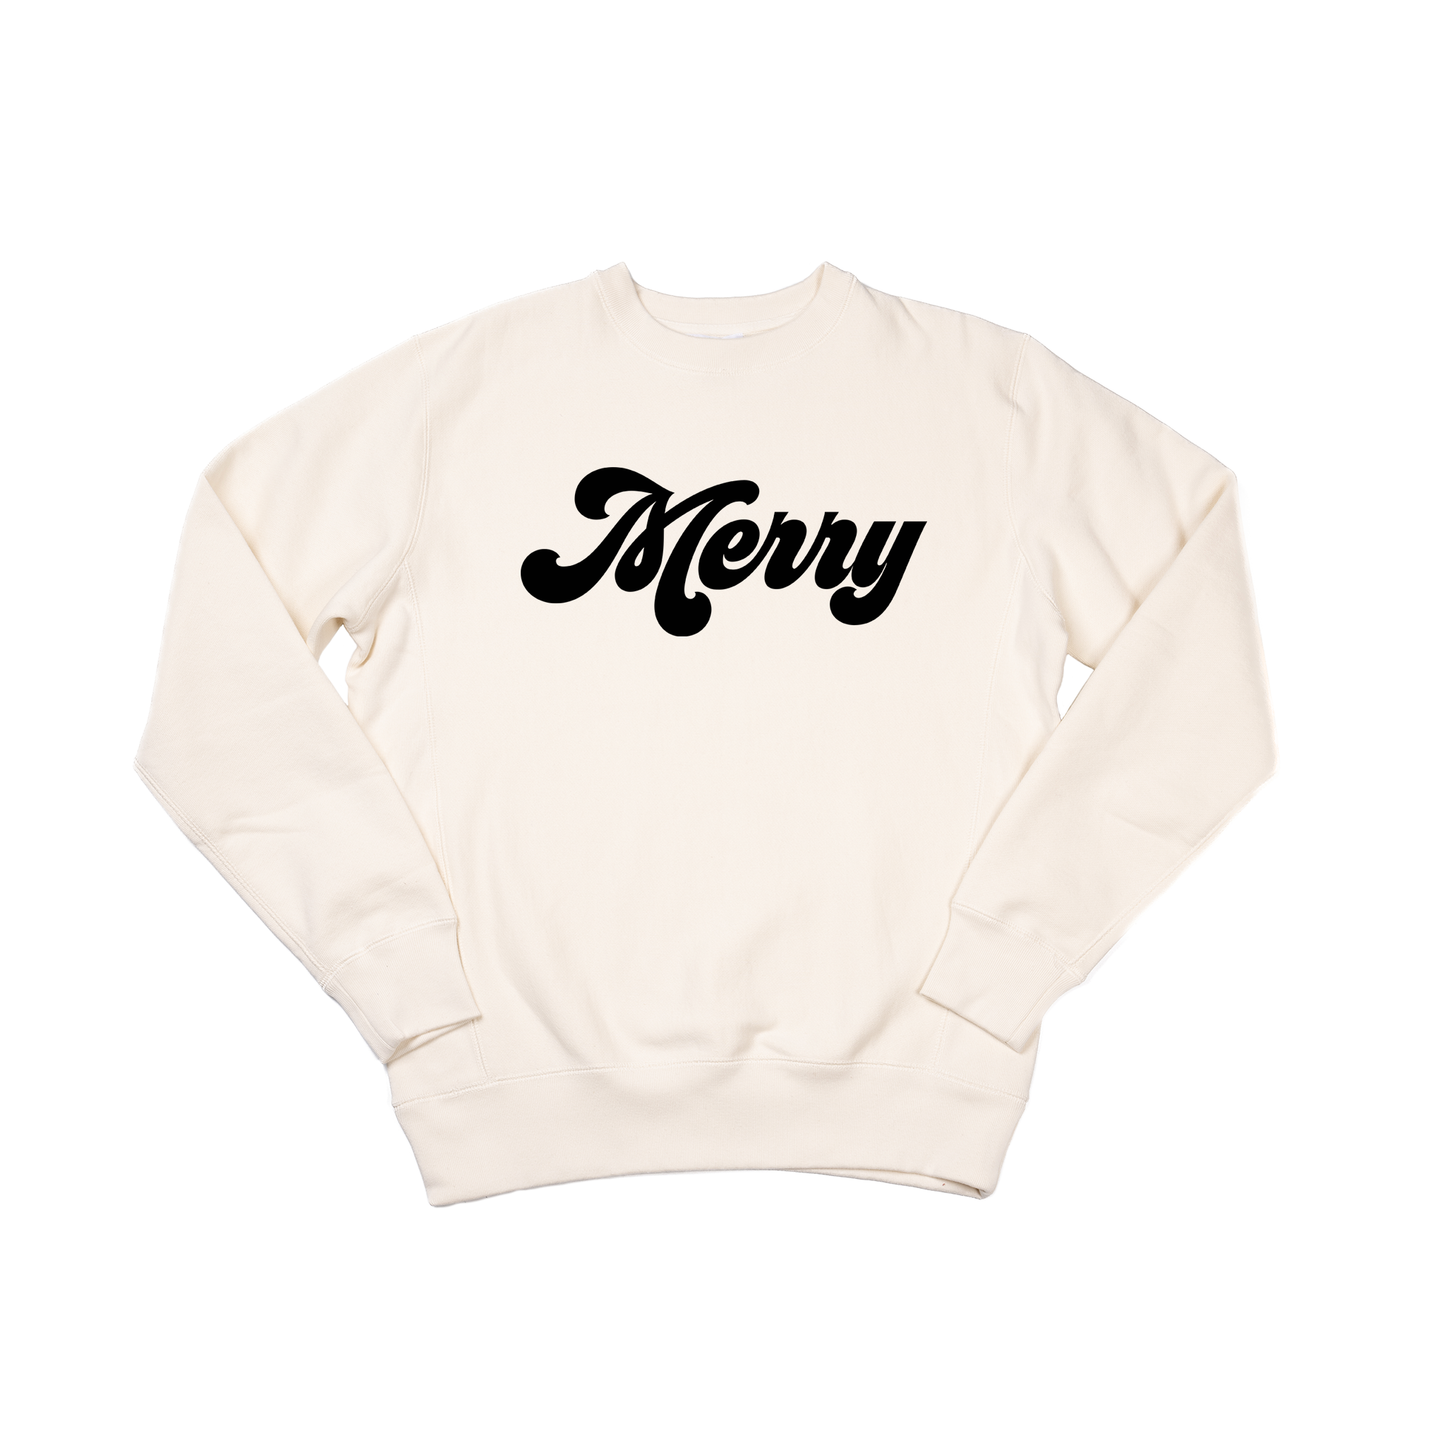 Merry (Retro, Black) - Heavyweight Sweatshirt (Natural)